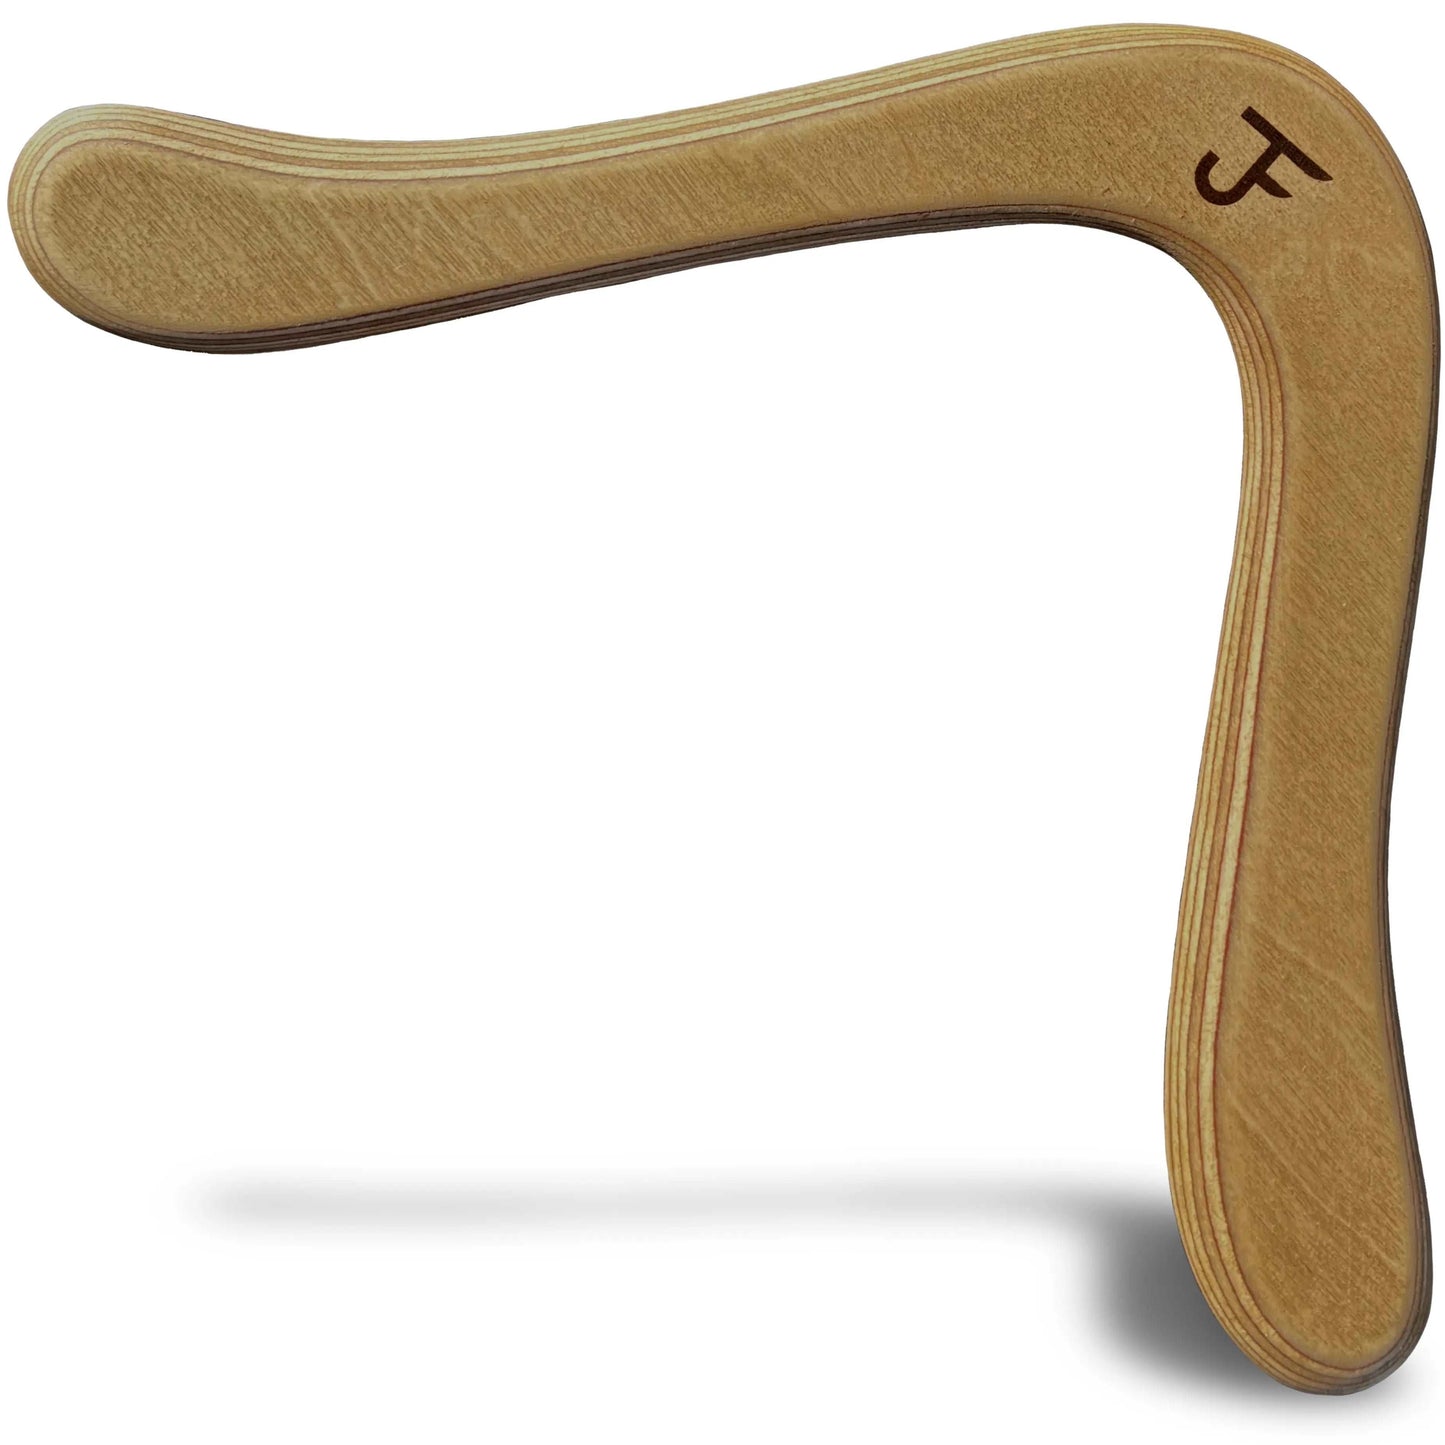 JF BUMERANG - Modell LONDON Dunkel- Rechtshänder - Holz Boomerang - Handgefertigter Bumerang aus der Vater-Sohn Manufaktur JF Bumerang. 